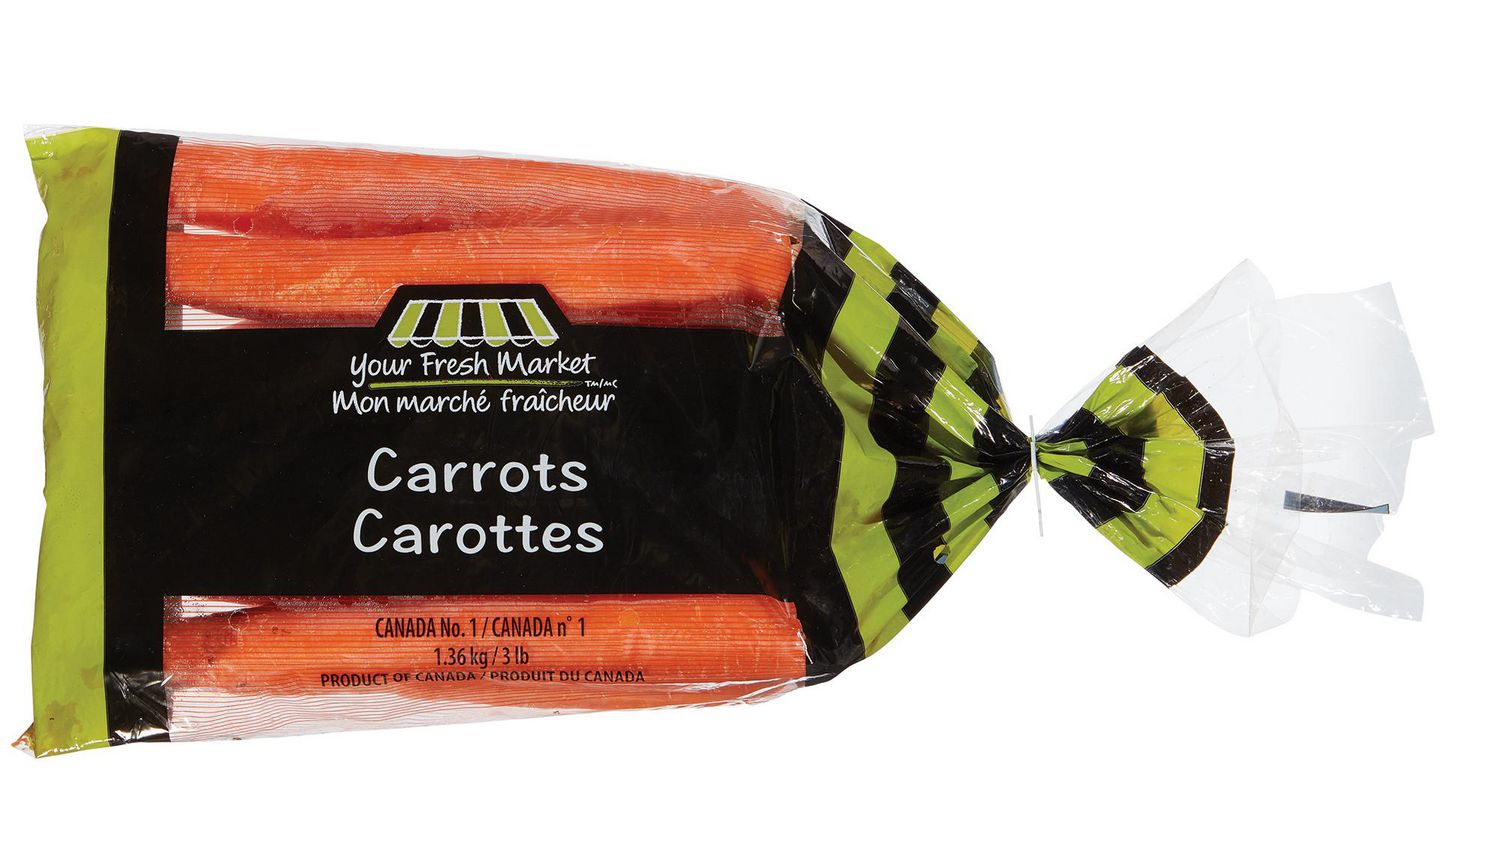 Mini carottes coupées Mon marché fraîcheur 454 g 